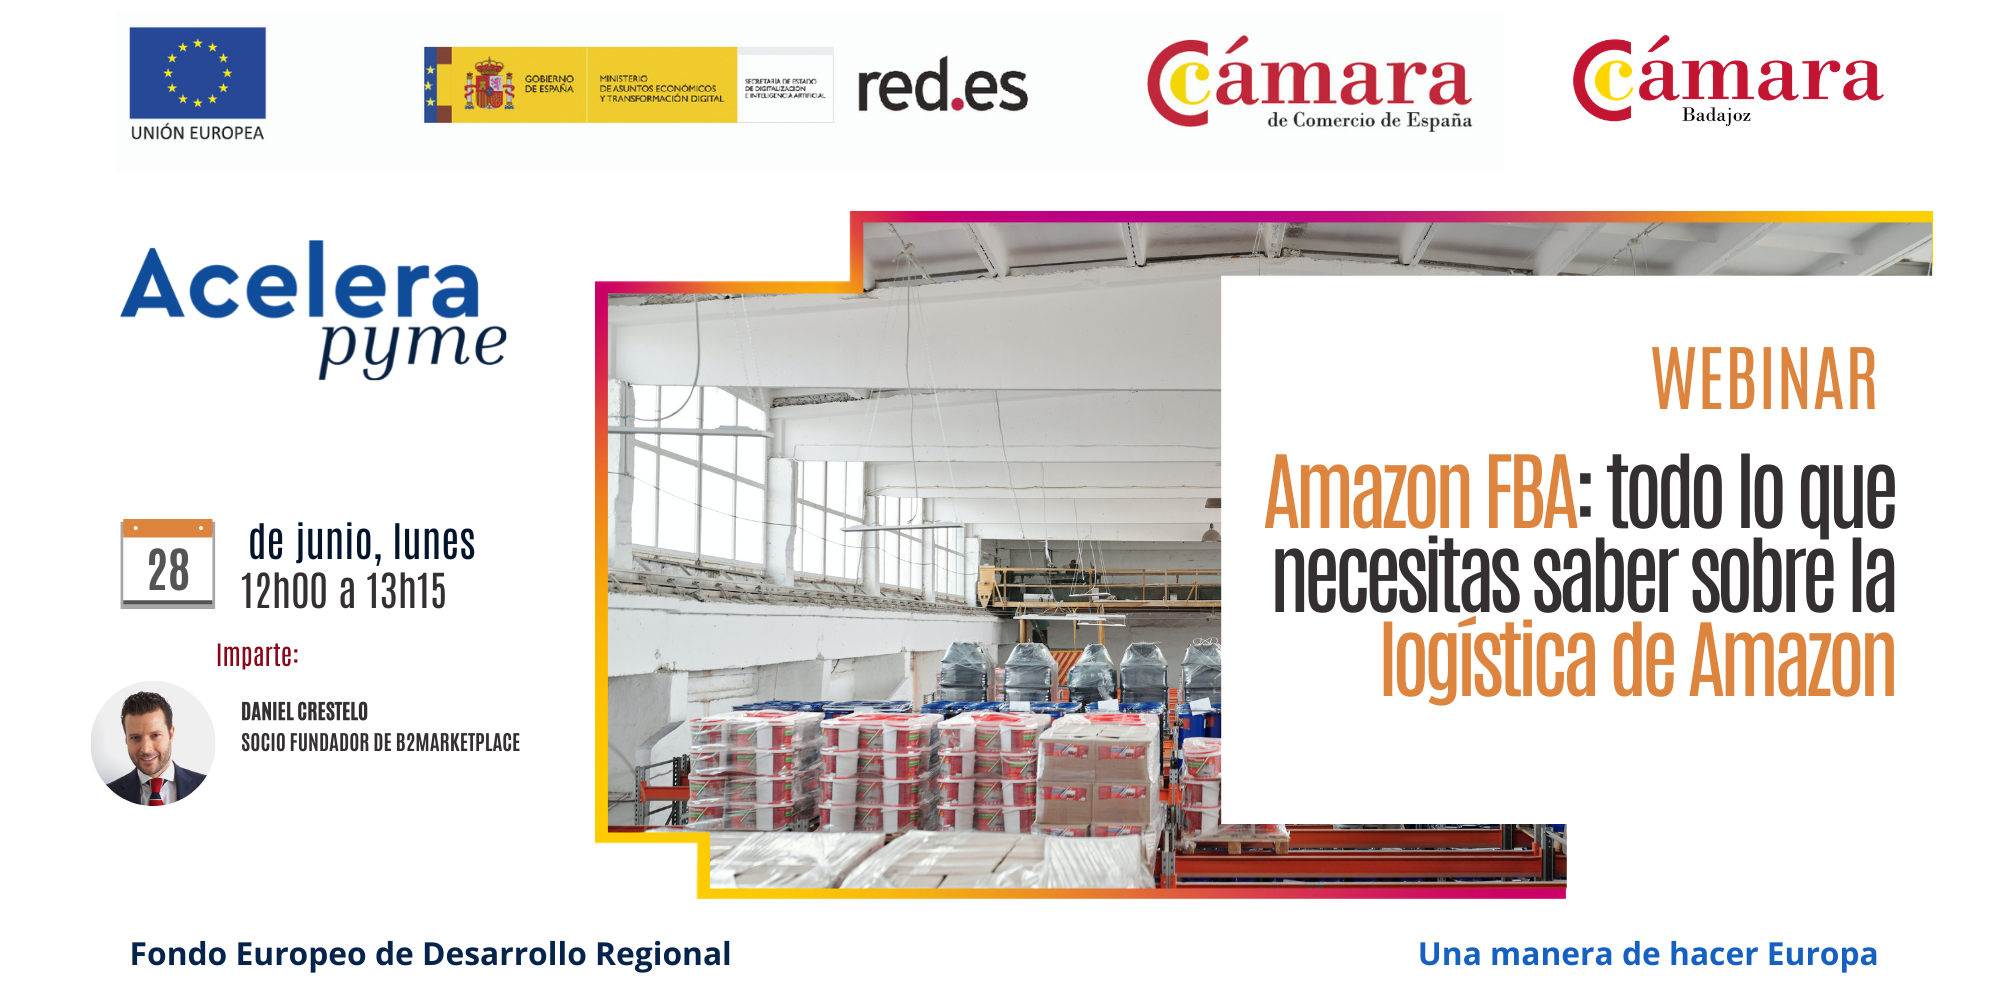 WEBINAR - Amazon FBA: todo lo que necesitas saber sobre la logística de Amazon